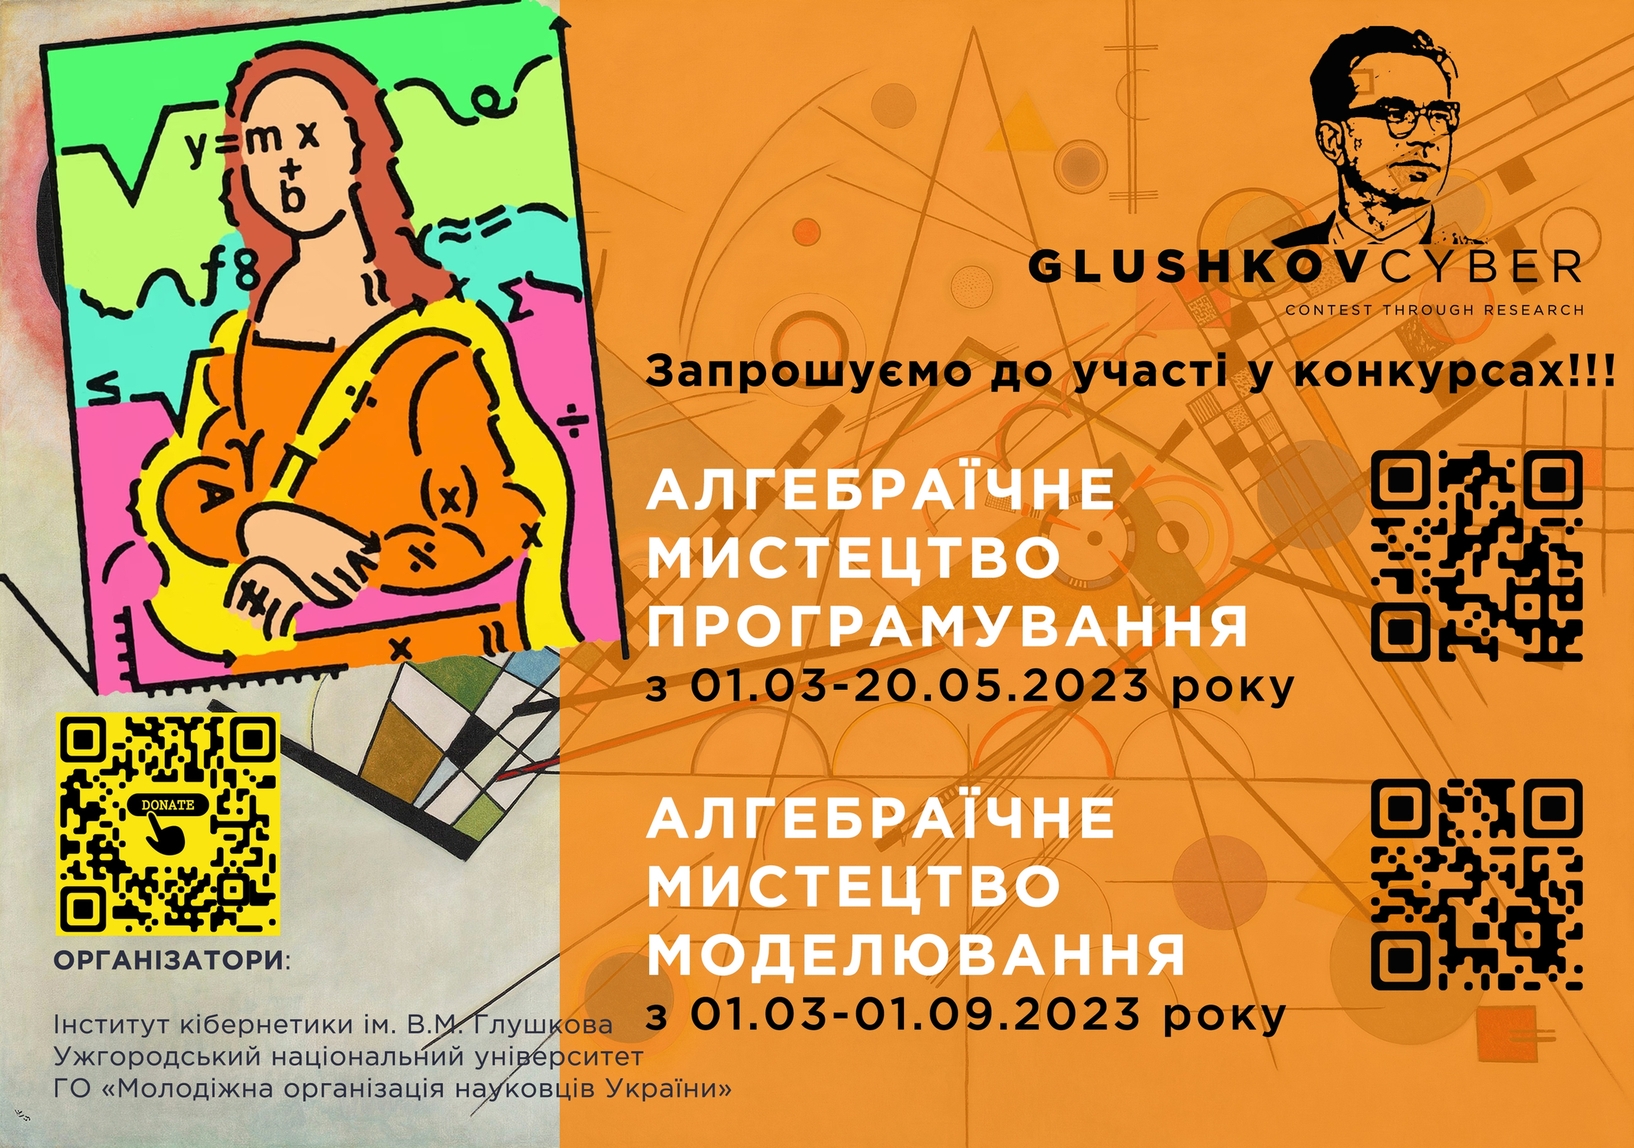 Конкурс Glushkovcyber-2023, присвячений 100-річчю від дня народження В.М. Глушкова